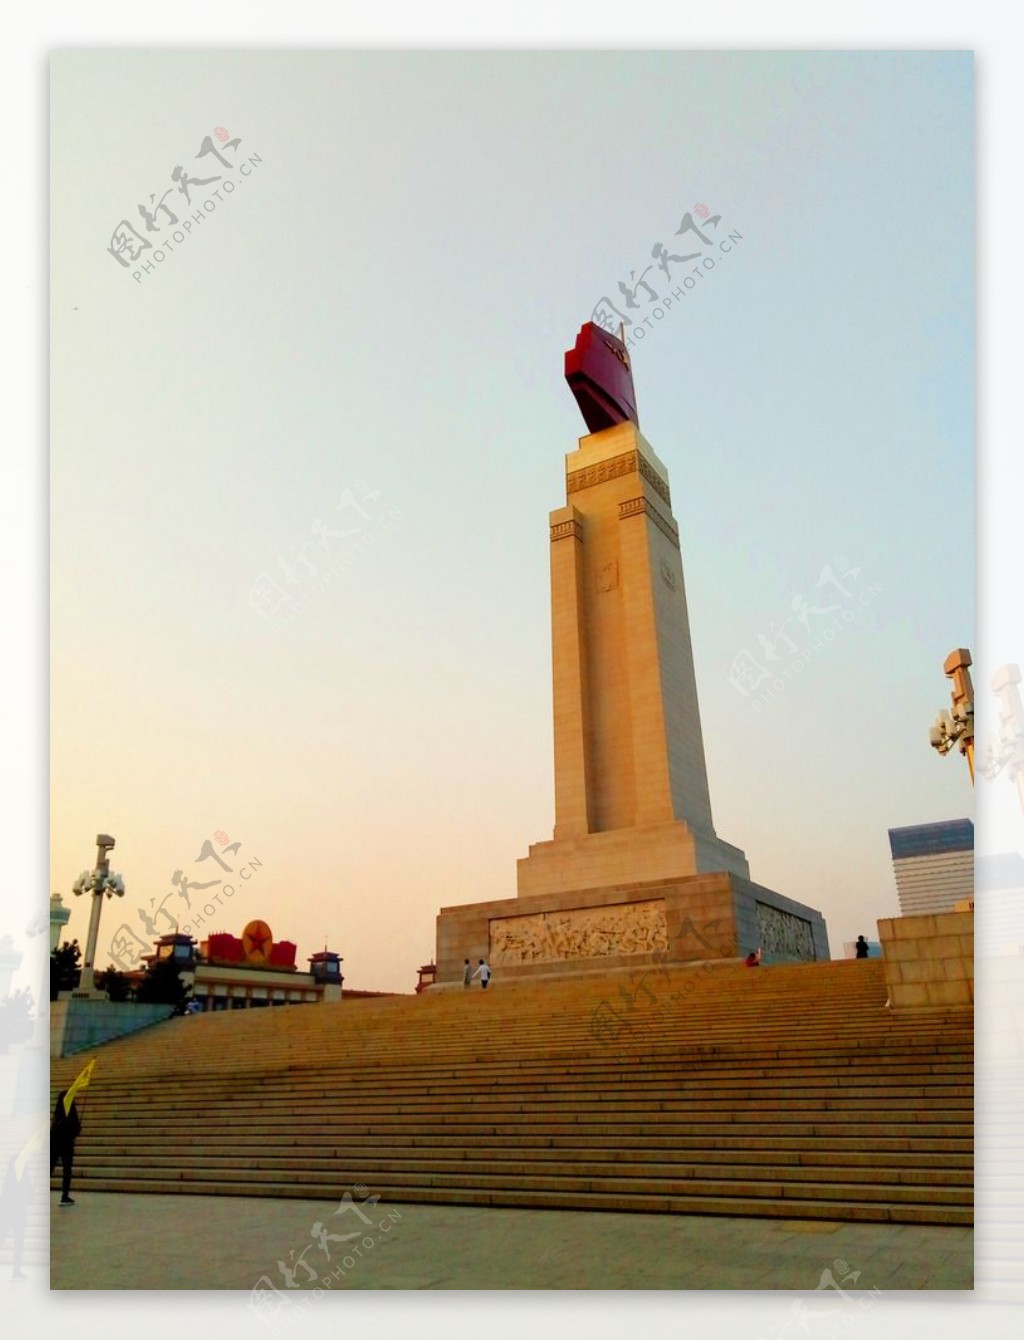 南昌起义纪念碑